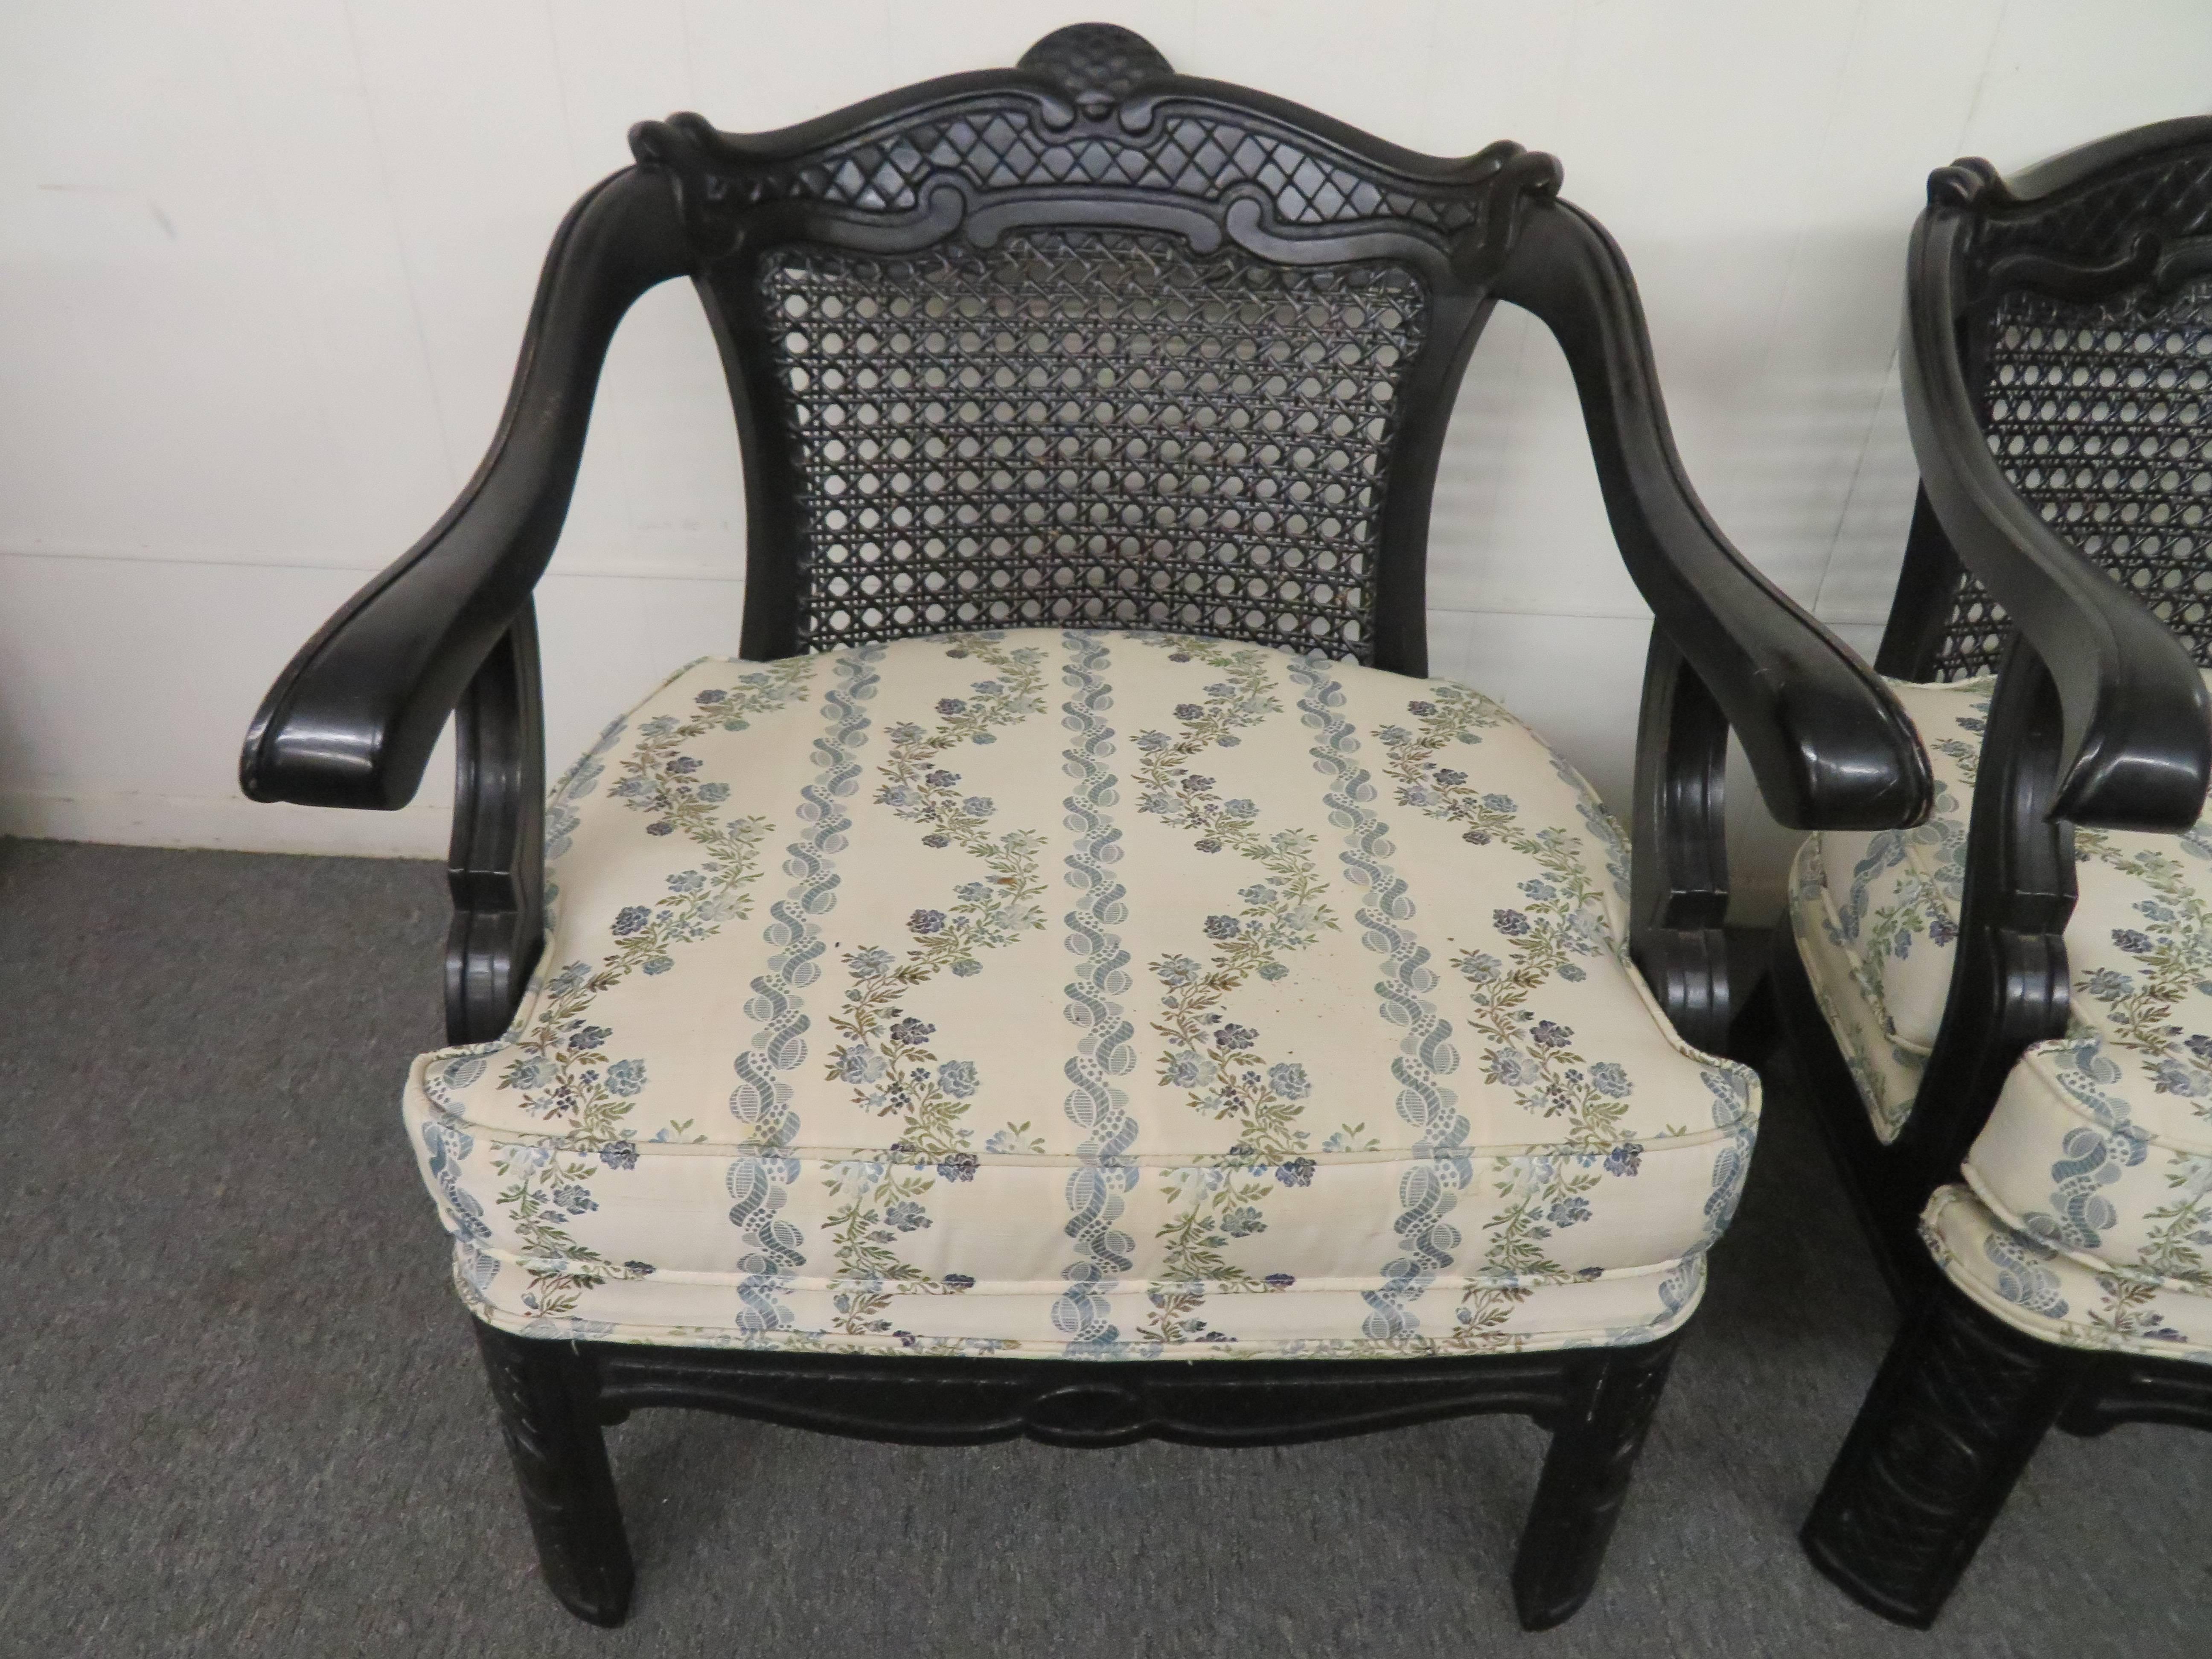 Hübsches, großformatiges Paar Armlehnstühle im Chinoiserie-Stil mit geschwungenen Rückenlehnen. Wir lieben die übergroßen, breiten Sitze und die schwarz lackierte Oberfläche. So wie es ist, ist es großartig, aber vielleicht möchten Sie ihm mit einer